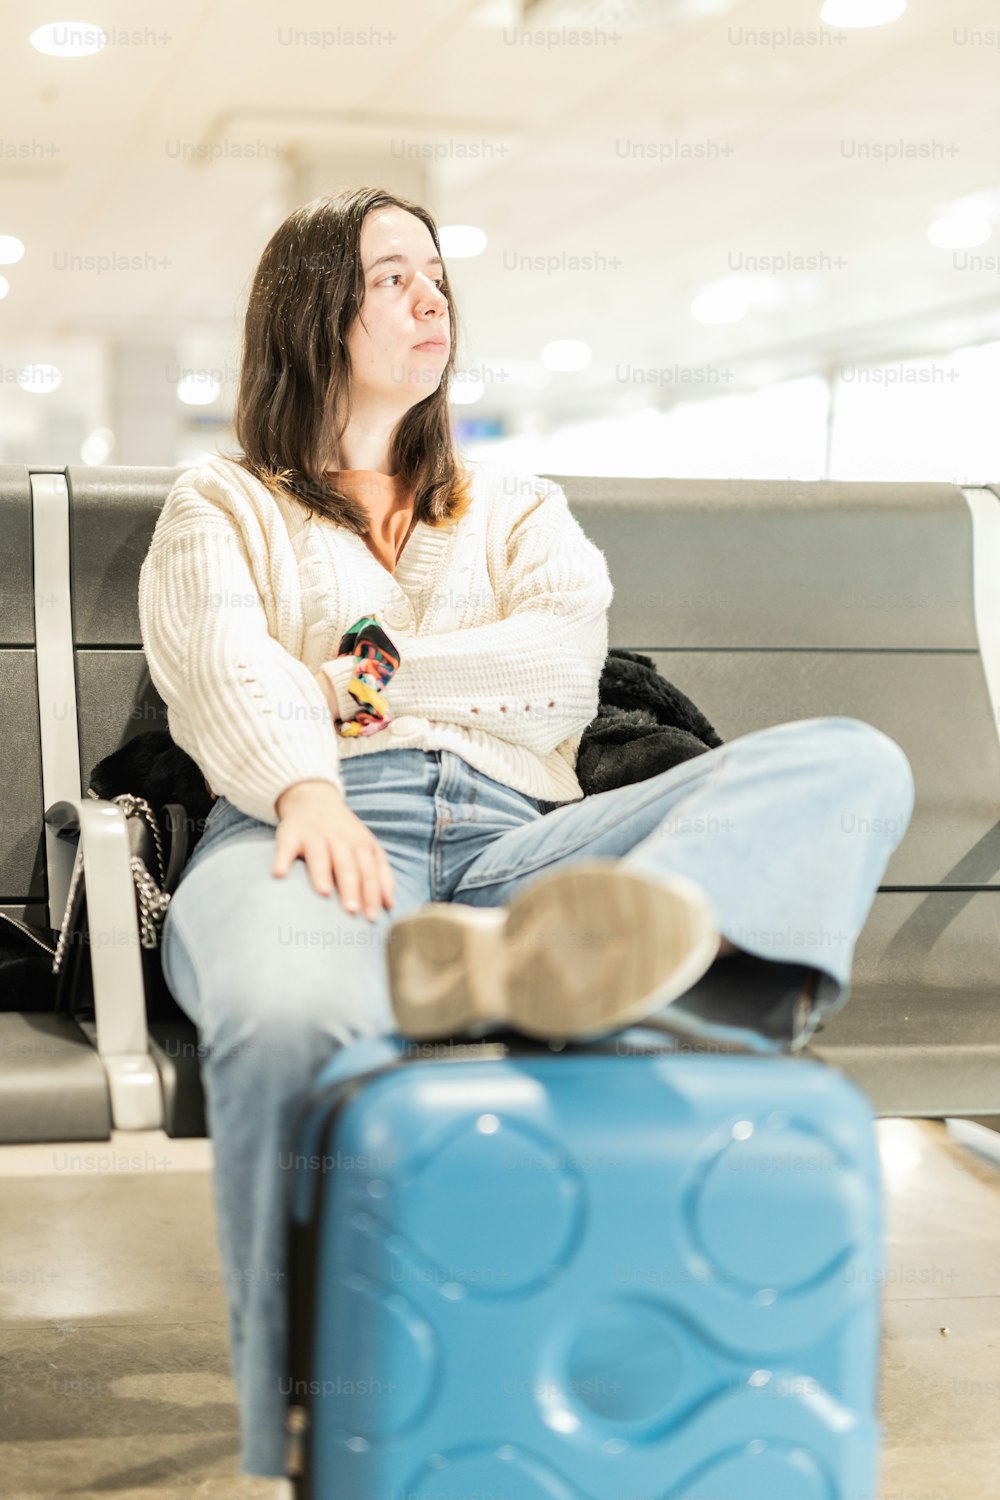 Una mujer sentada en un banco junto a una maleta azul